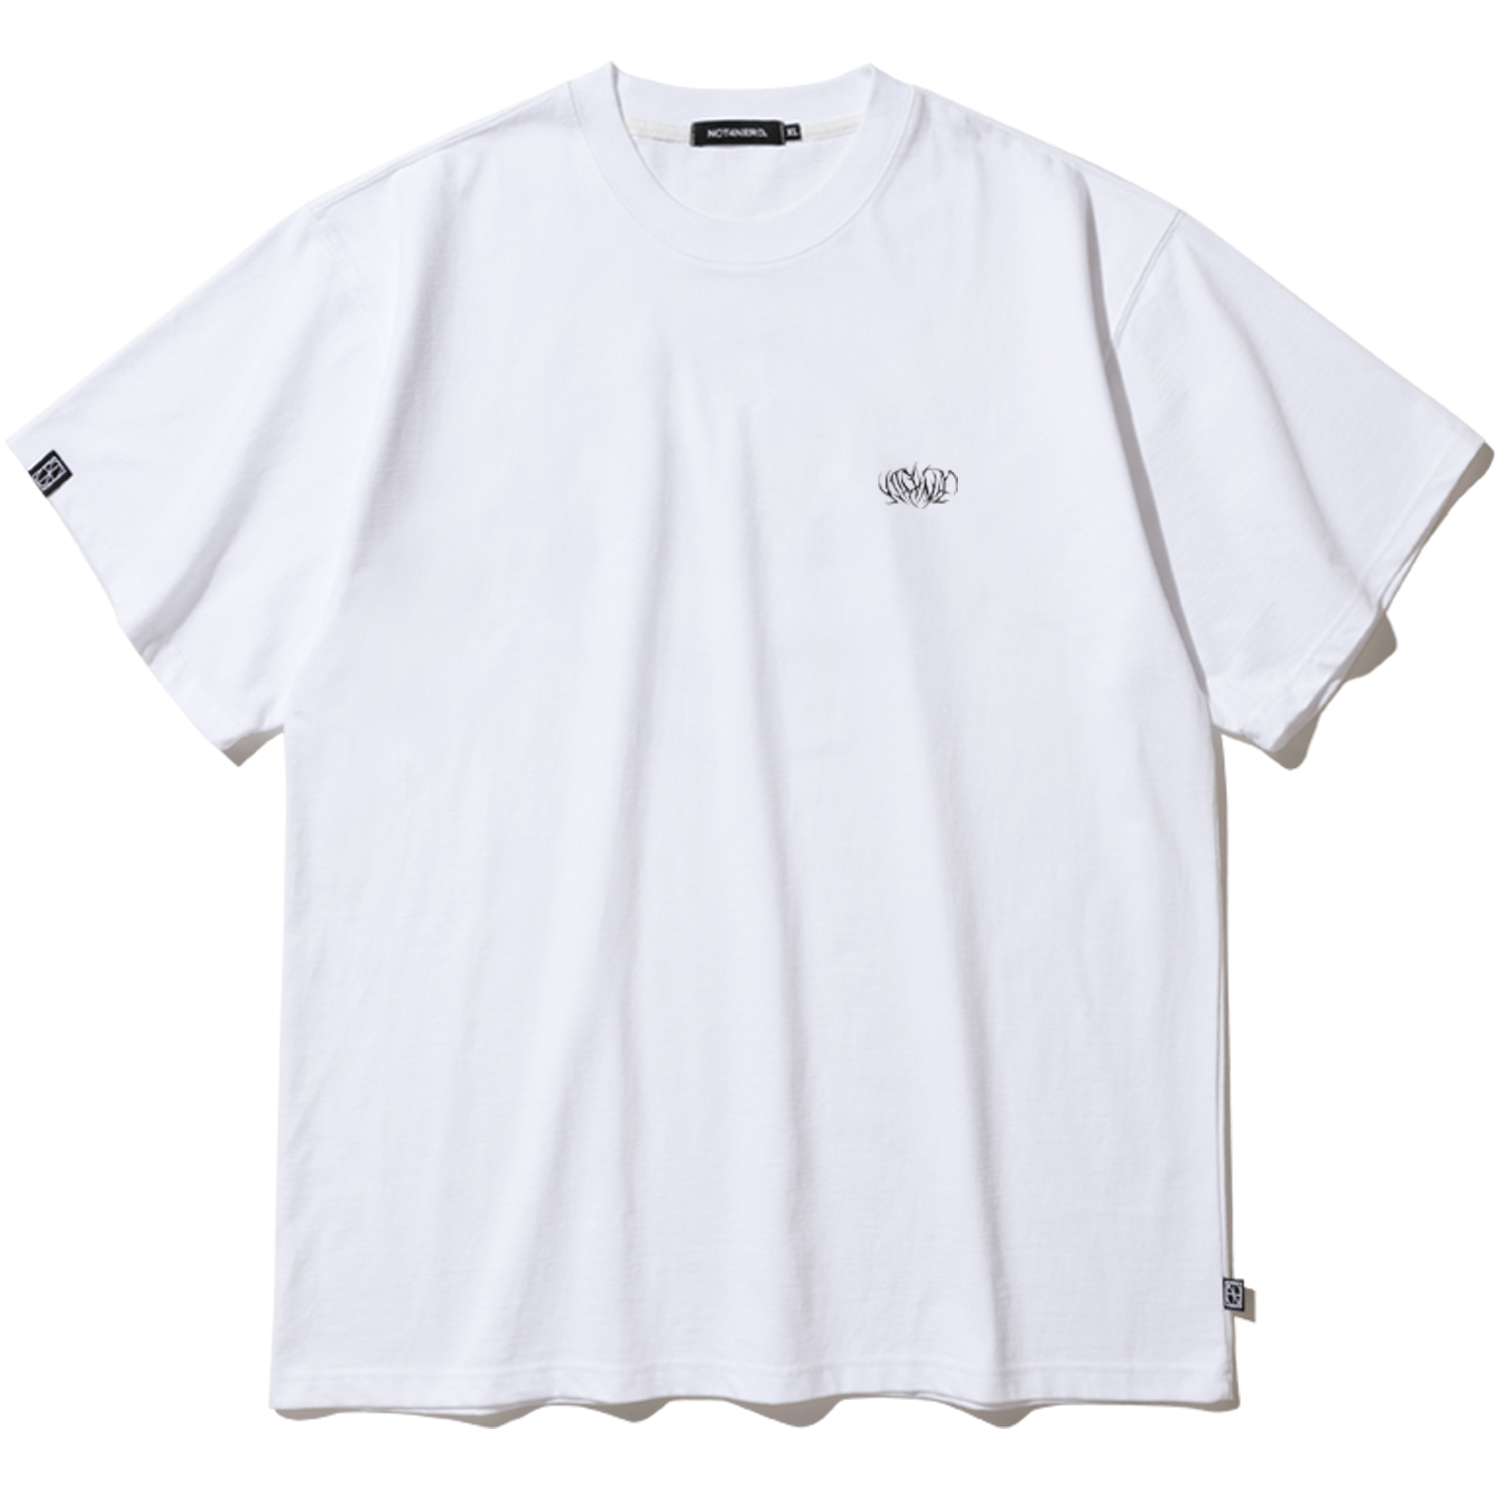 Metal N4ND Logo T-Shirts - White,NOT4NERD